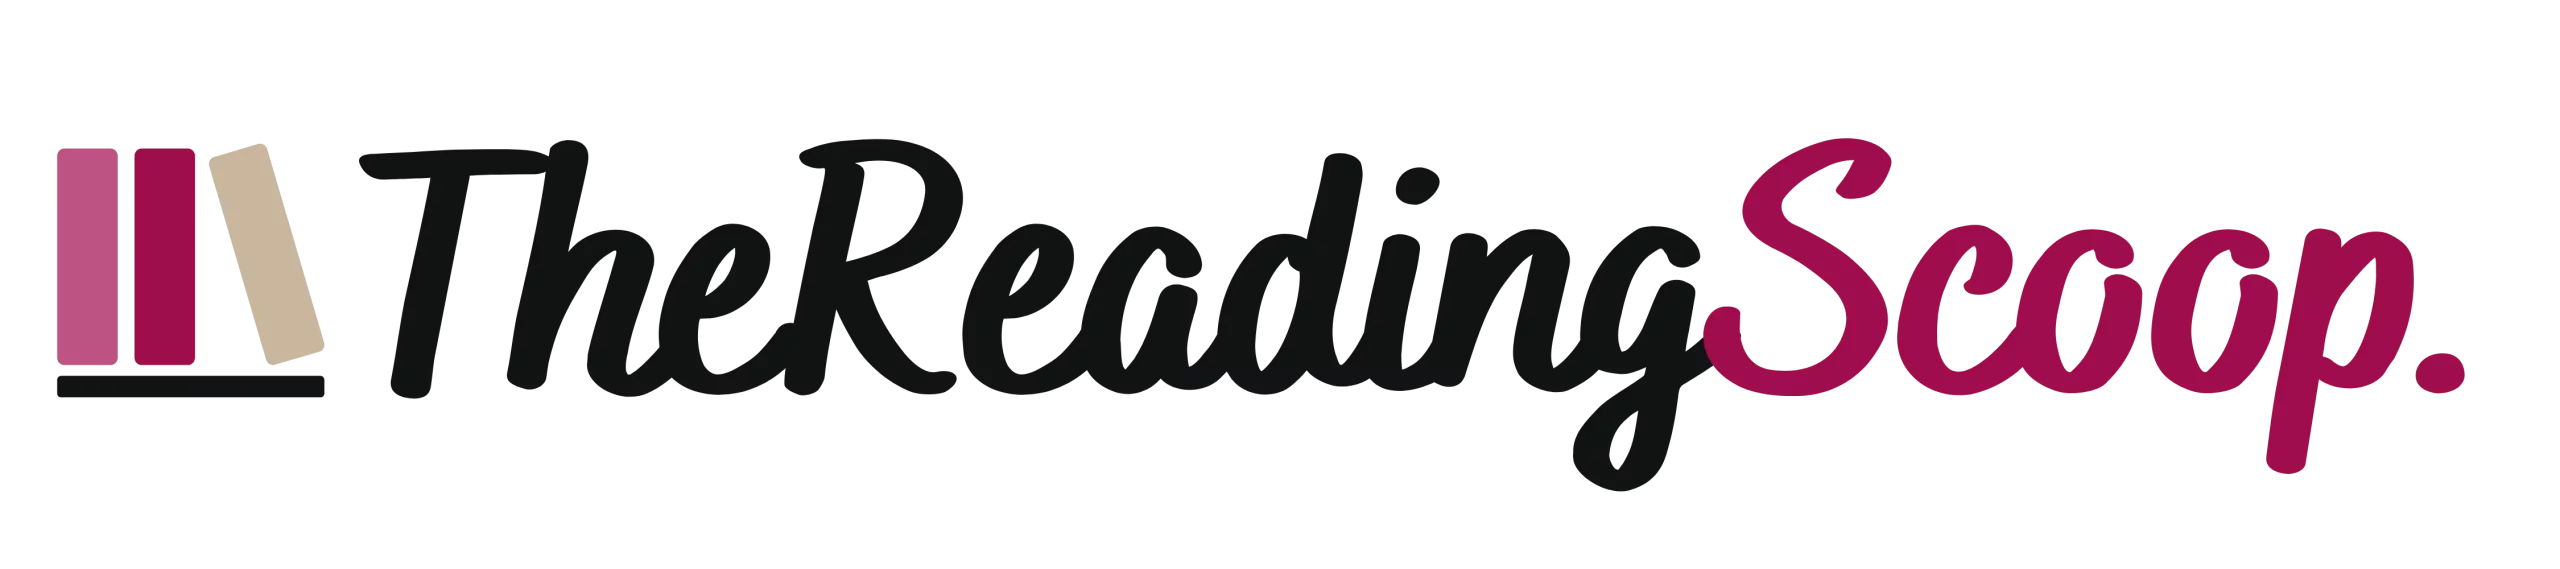 The-Reading-Scoop-Logo